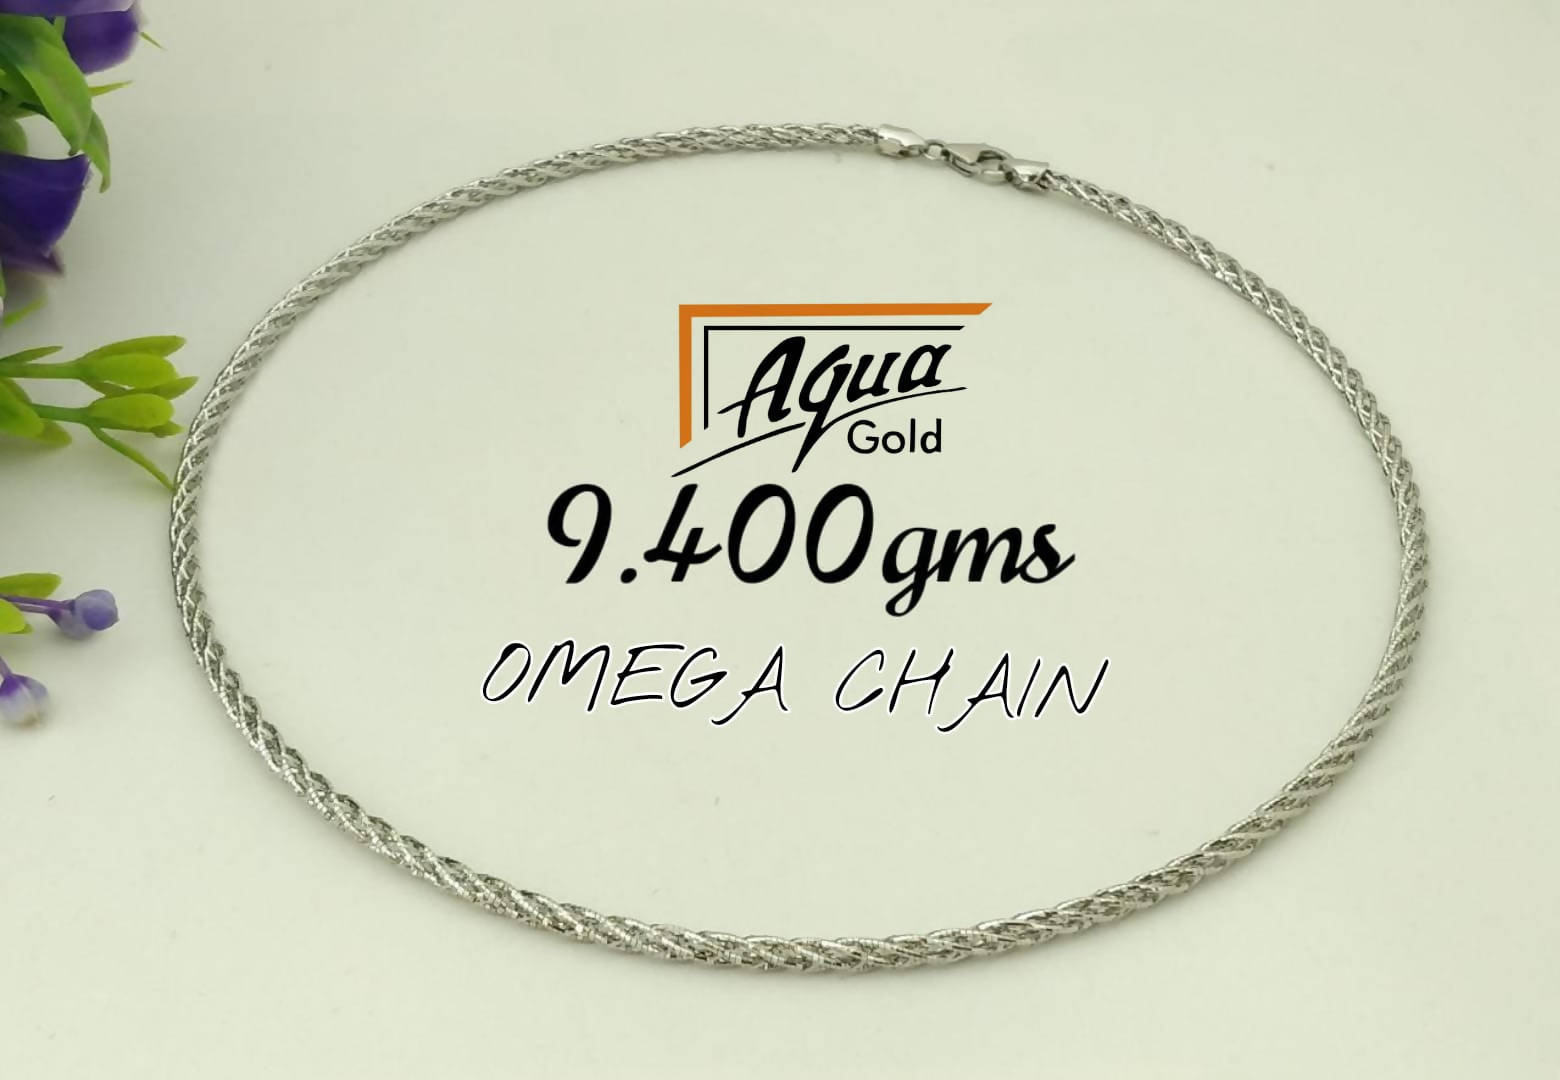 Omega Chain Sarafa Bazar India